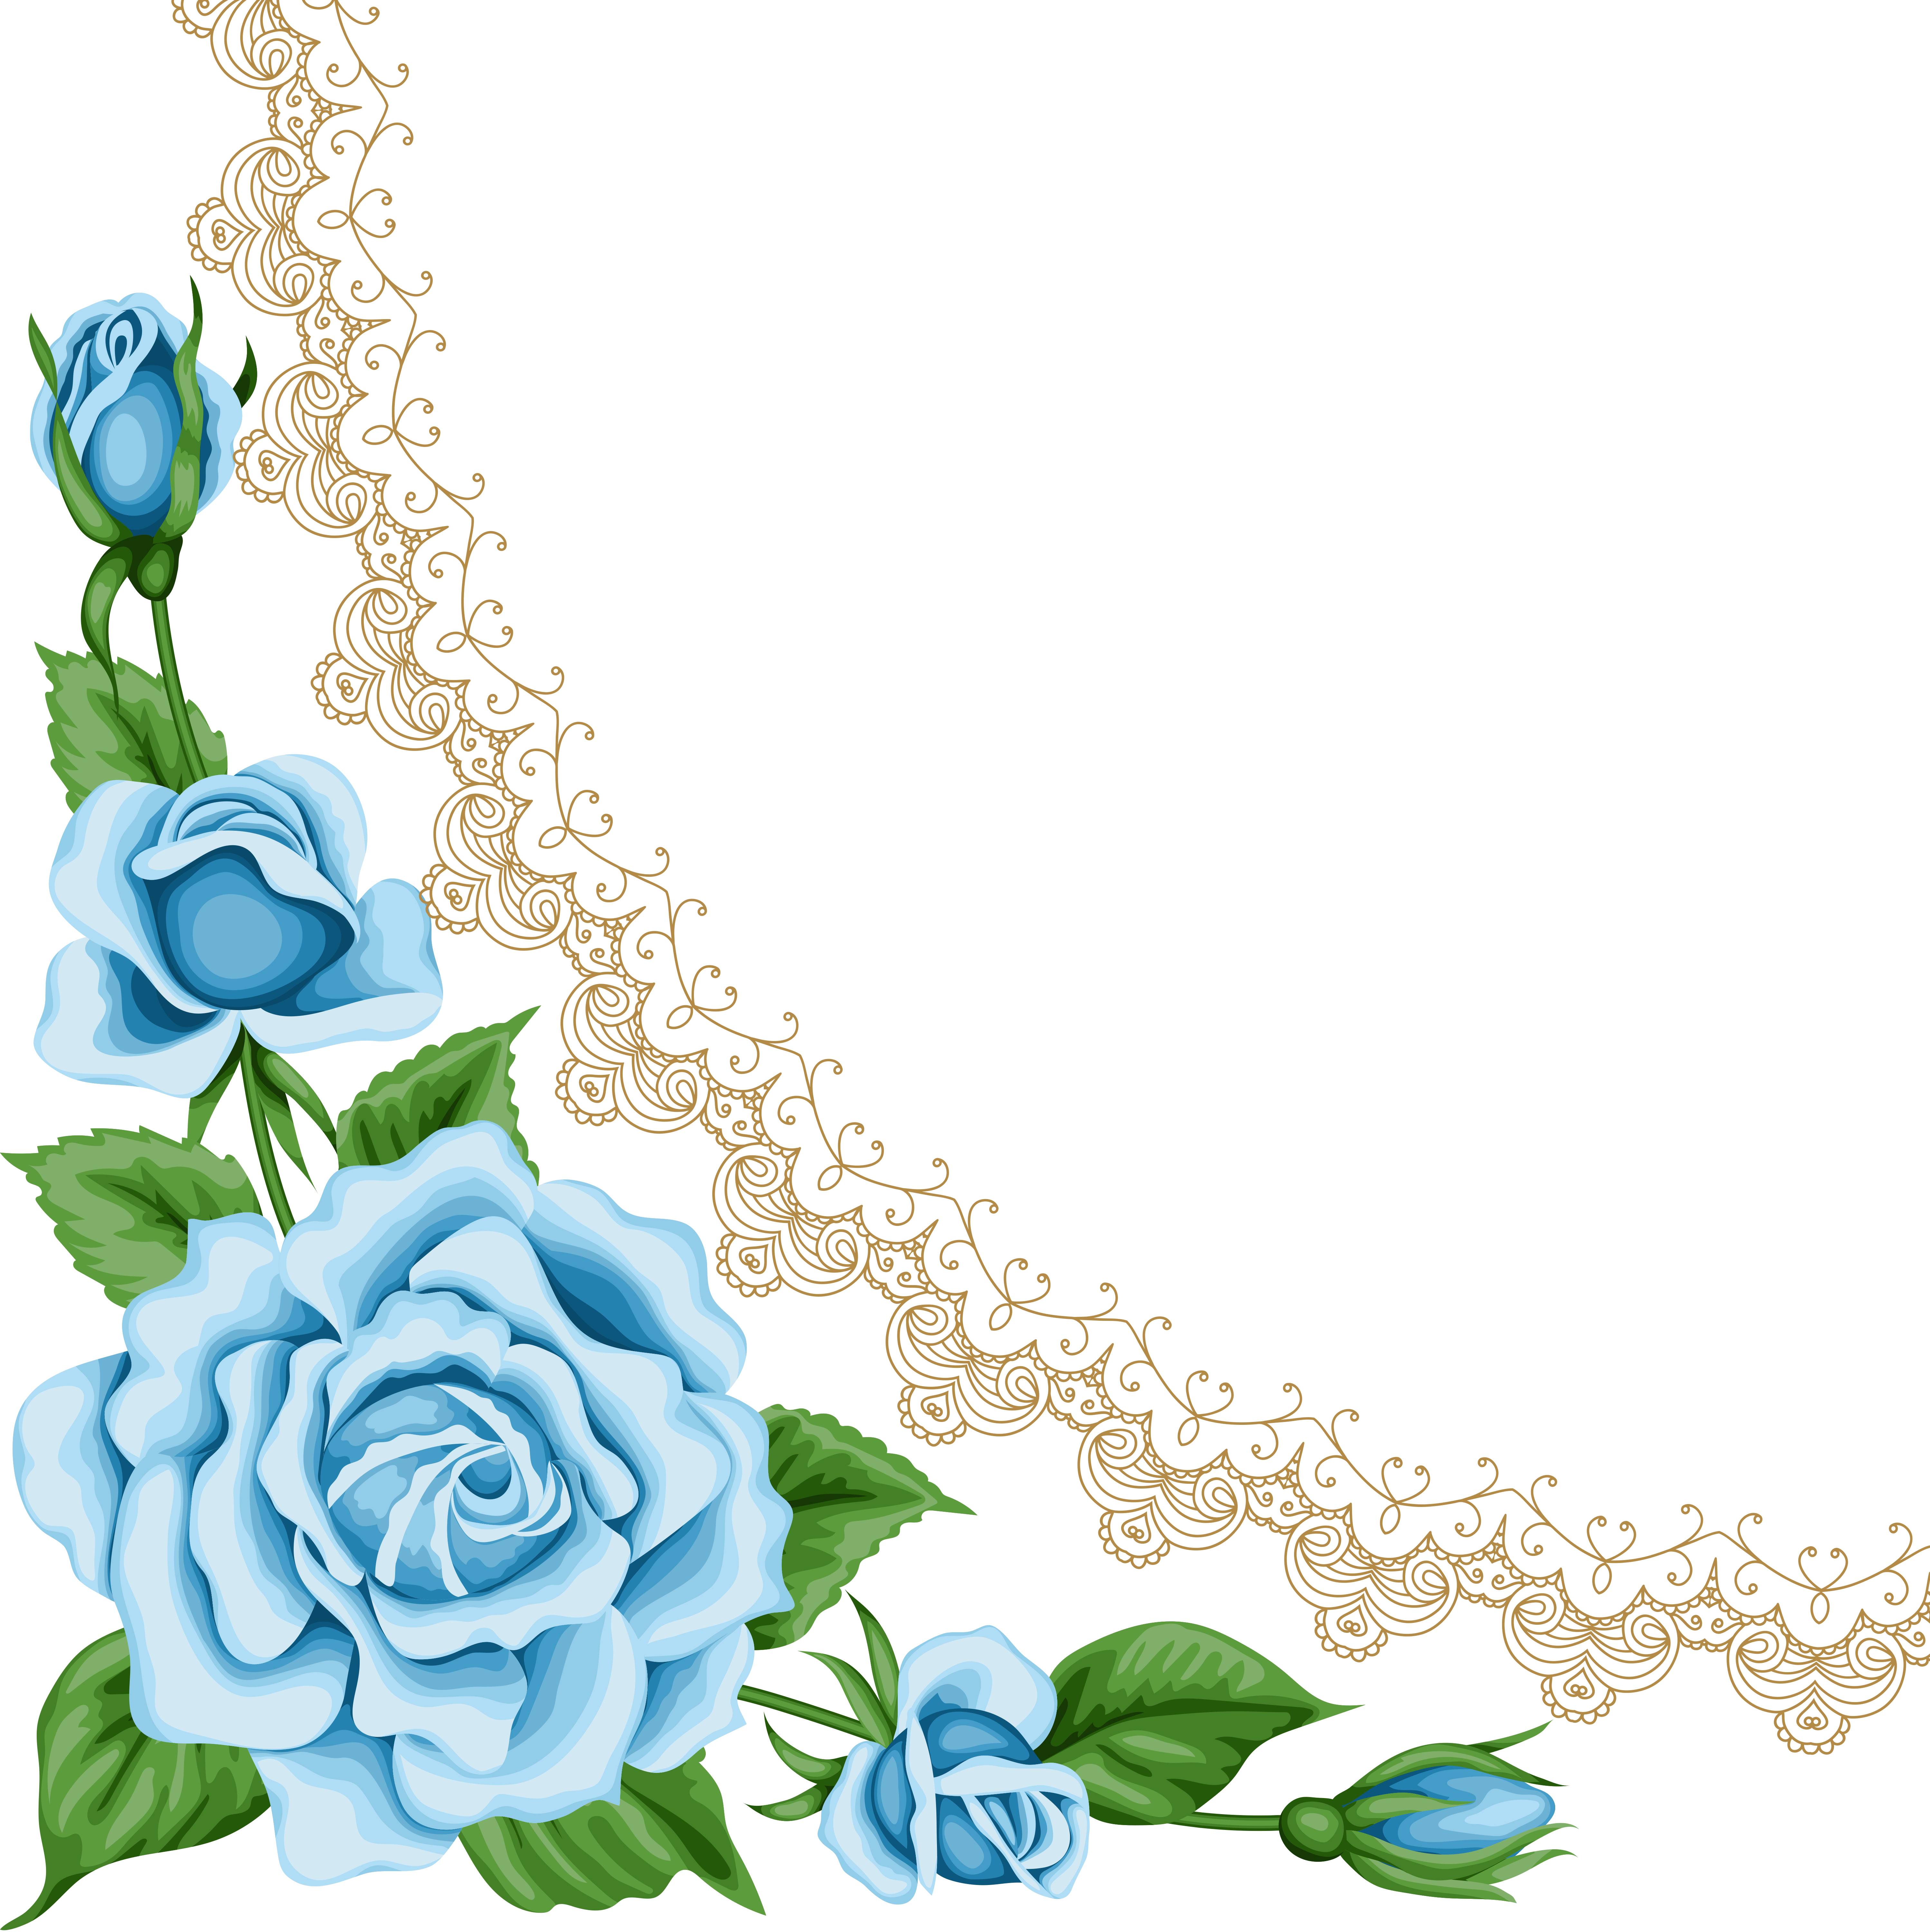 Vintage Flower Card With Colorful Roses [преобразованный] - Blue Flower Vintage Border (5994x6000)